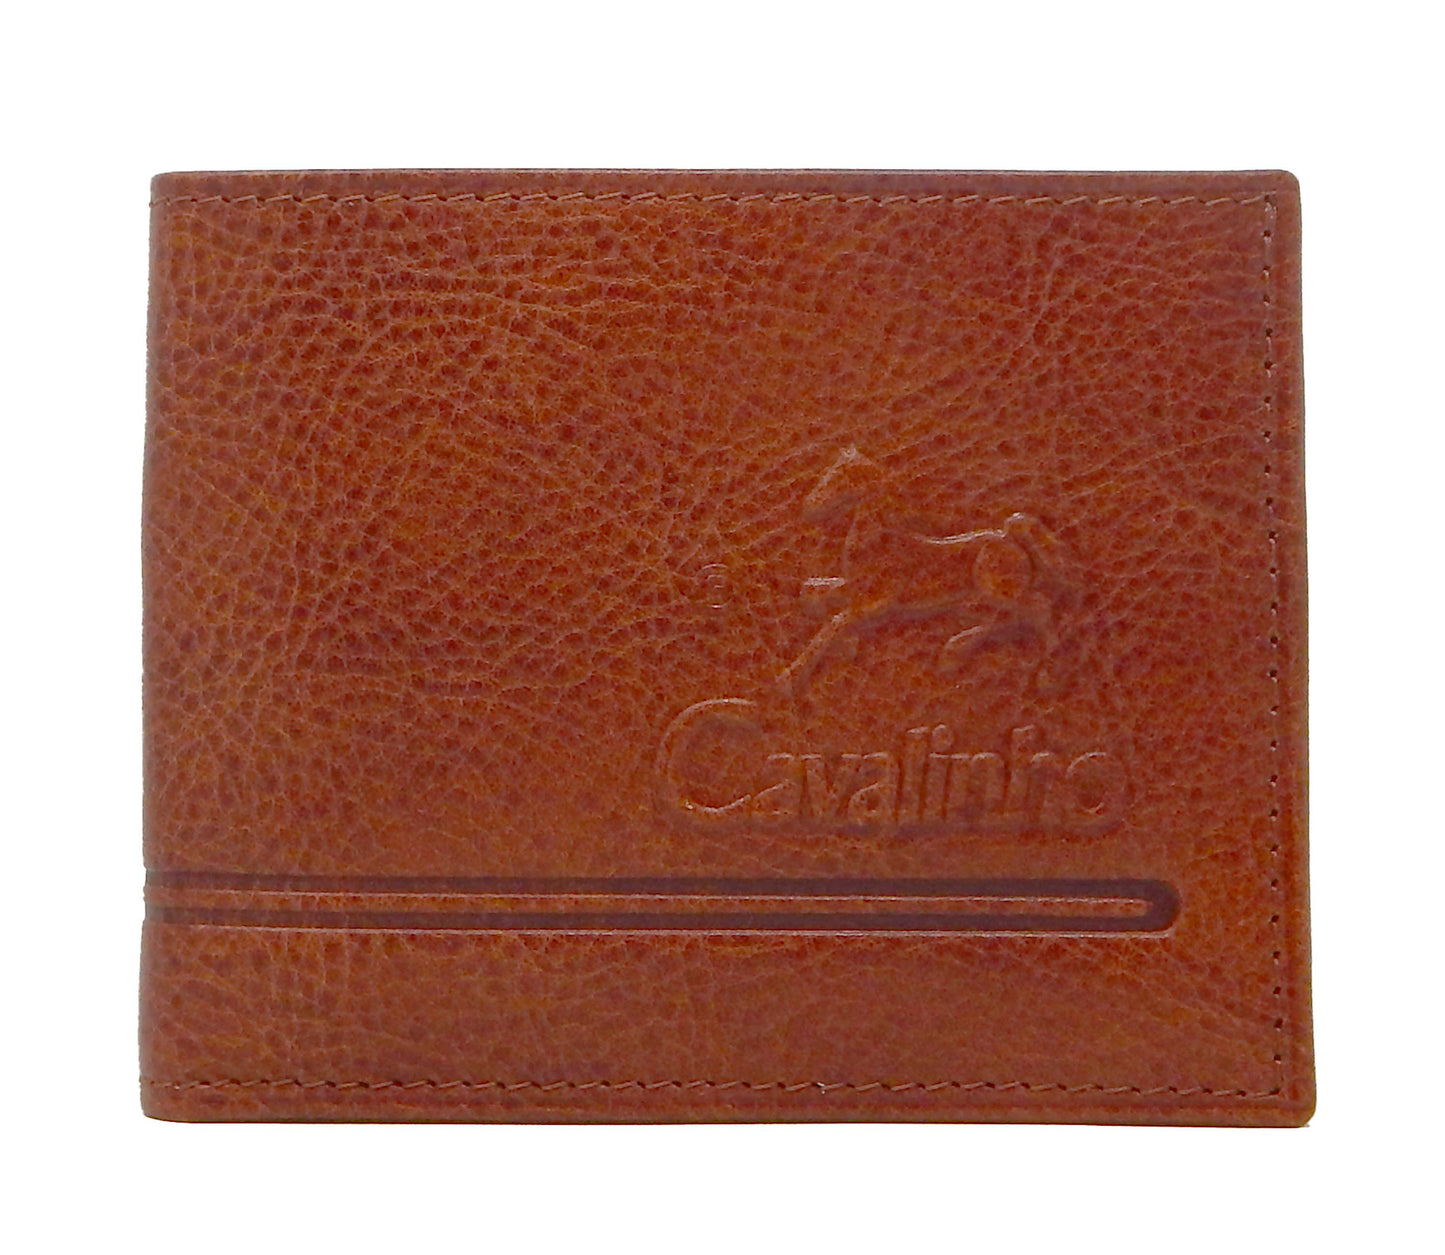 #color_ SaddleBrown | Cavalinho Men's 2 in 1 Bifold Leather Wallet - SaddleBrown - 28160528.13.99_1